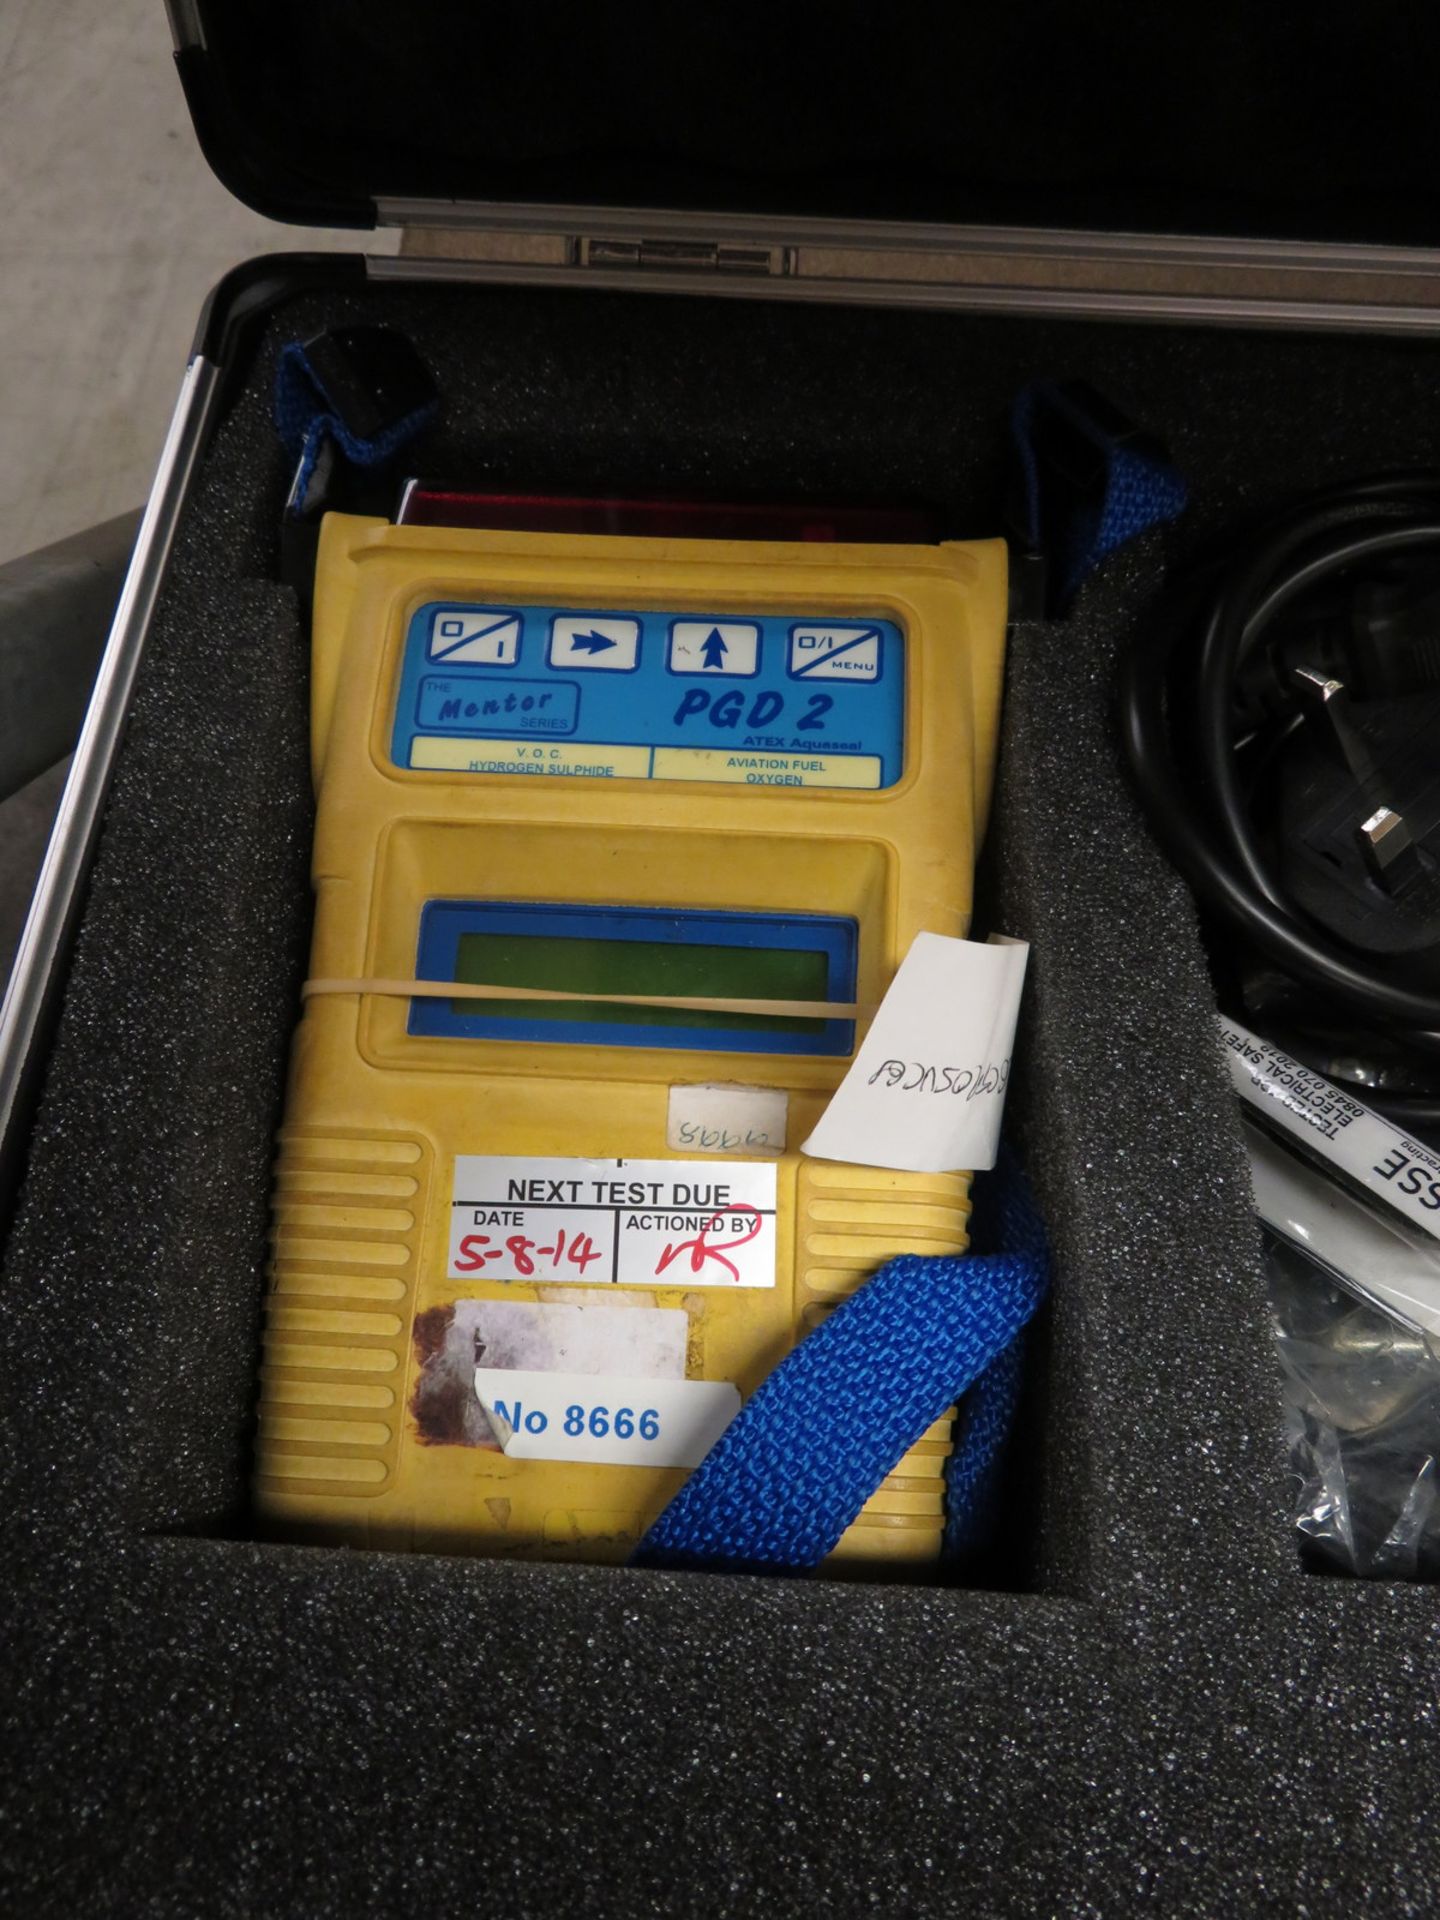 Status Scientific PGD2 portable gas detector set - Image 2 of 5